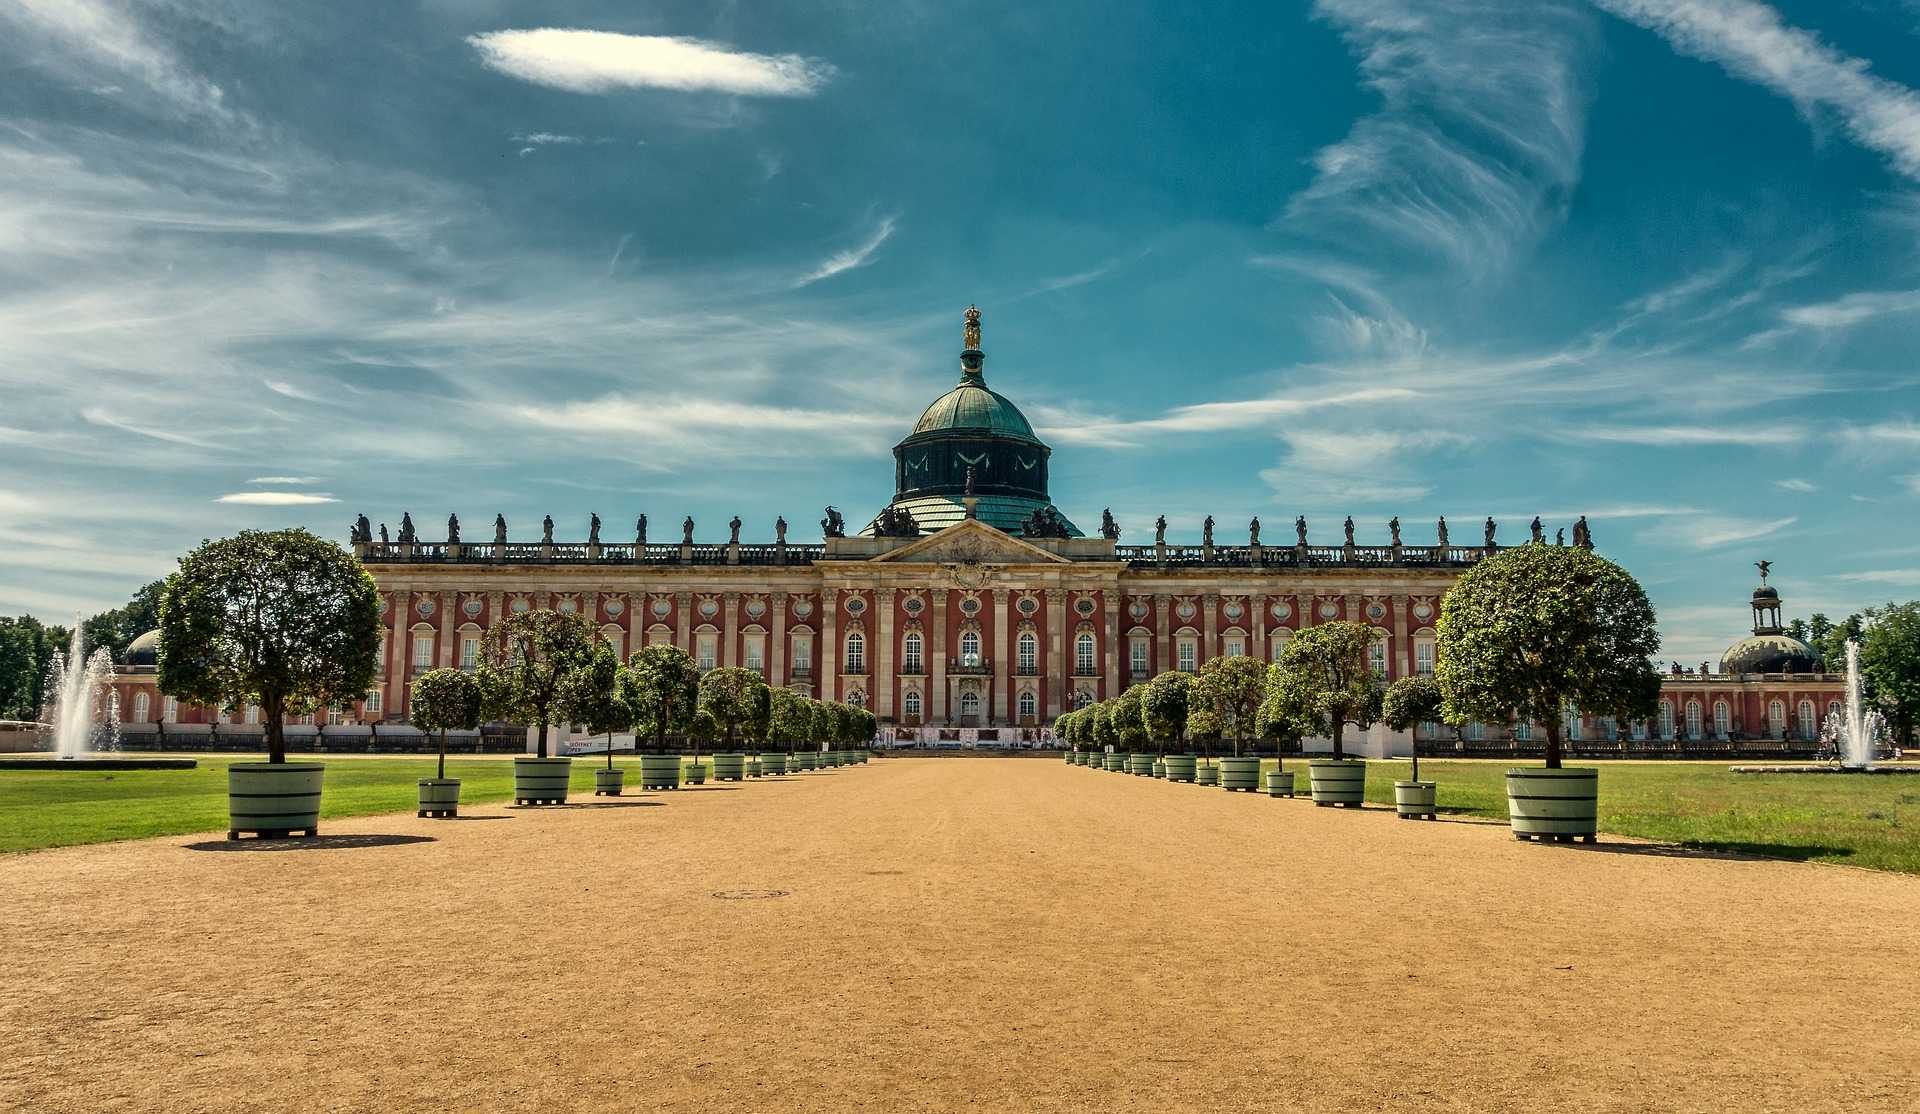 ארמון סנסוסי ברלין 2022 - כרטיסים, מחירים וכל הפרטים!